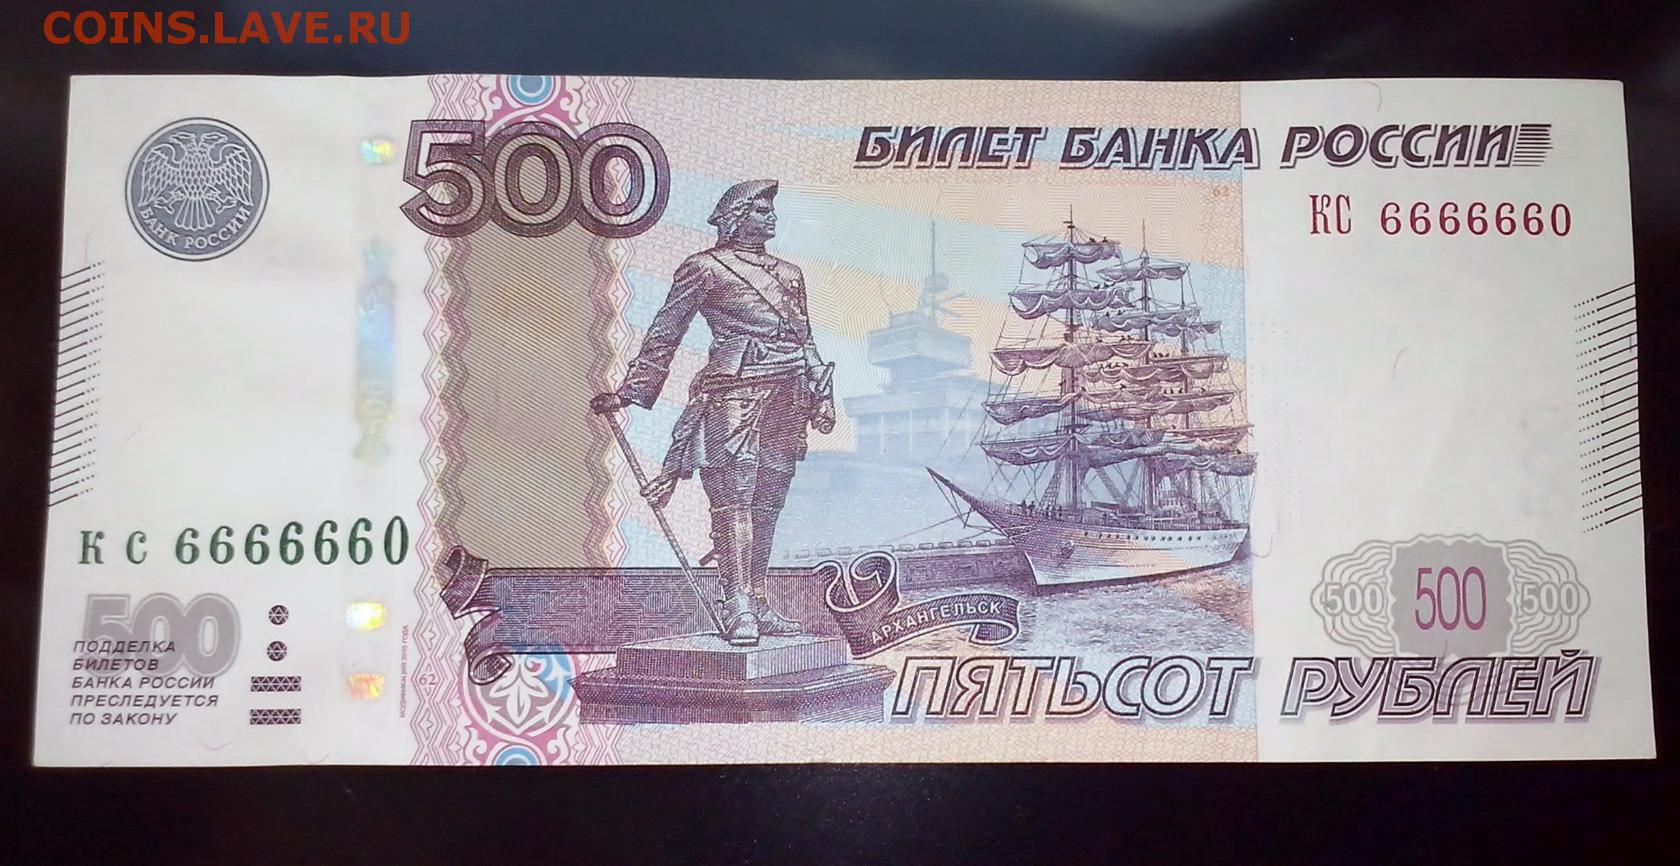 80 от 500 рублей. 500 Рублей. Купюра 500 рублей. Пятьсот рублей. 500 Рублей с 2 сторон.